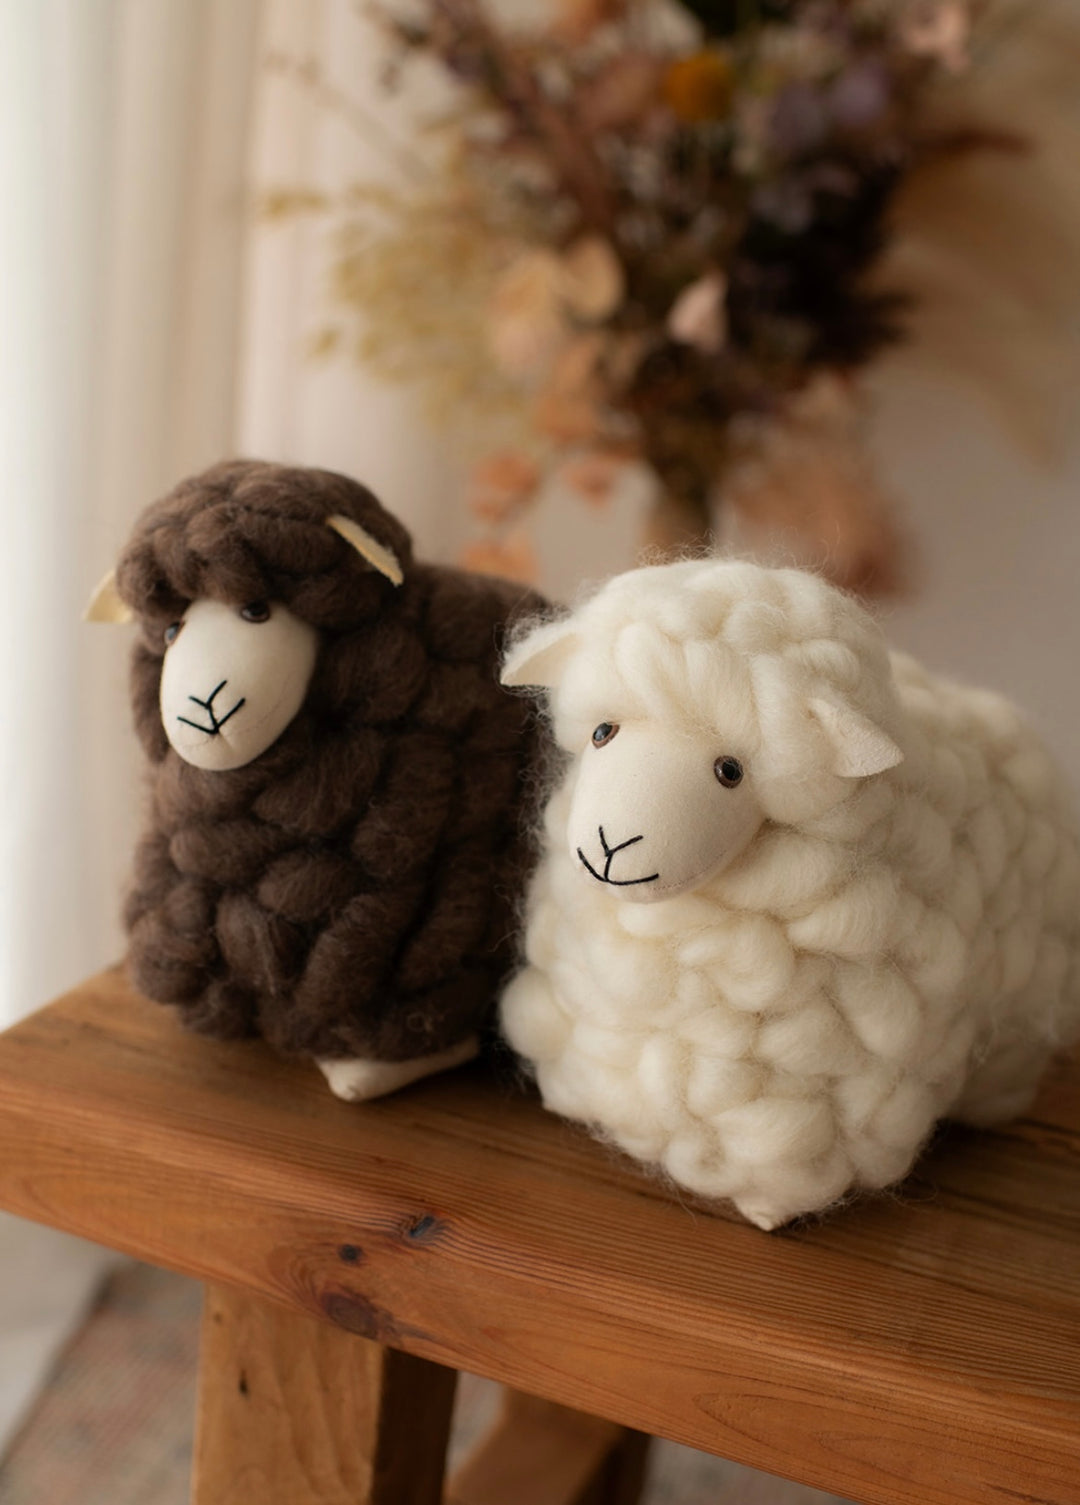 Baa baa sheep